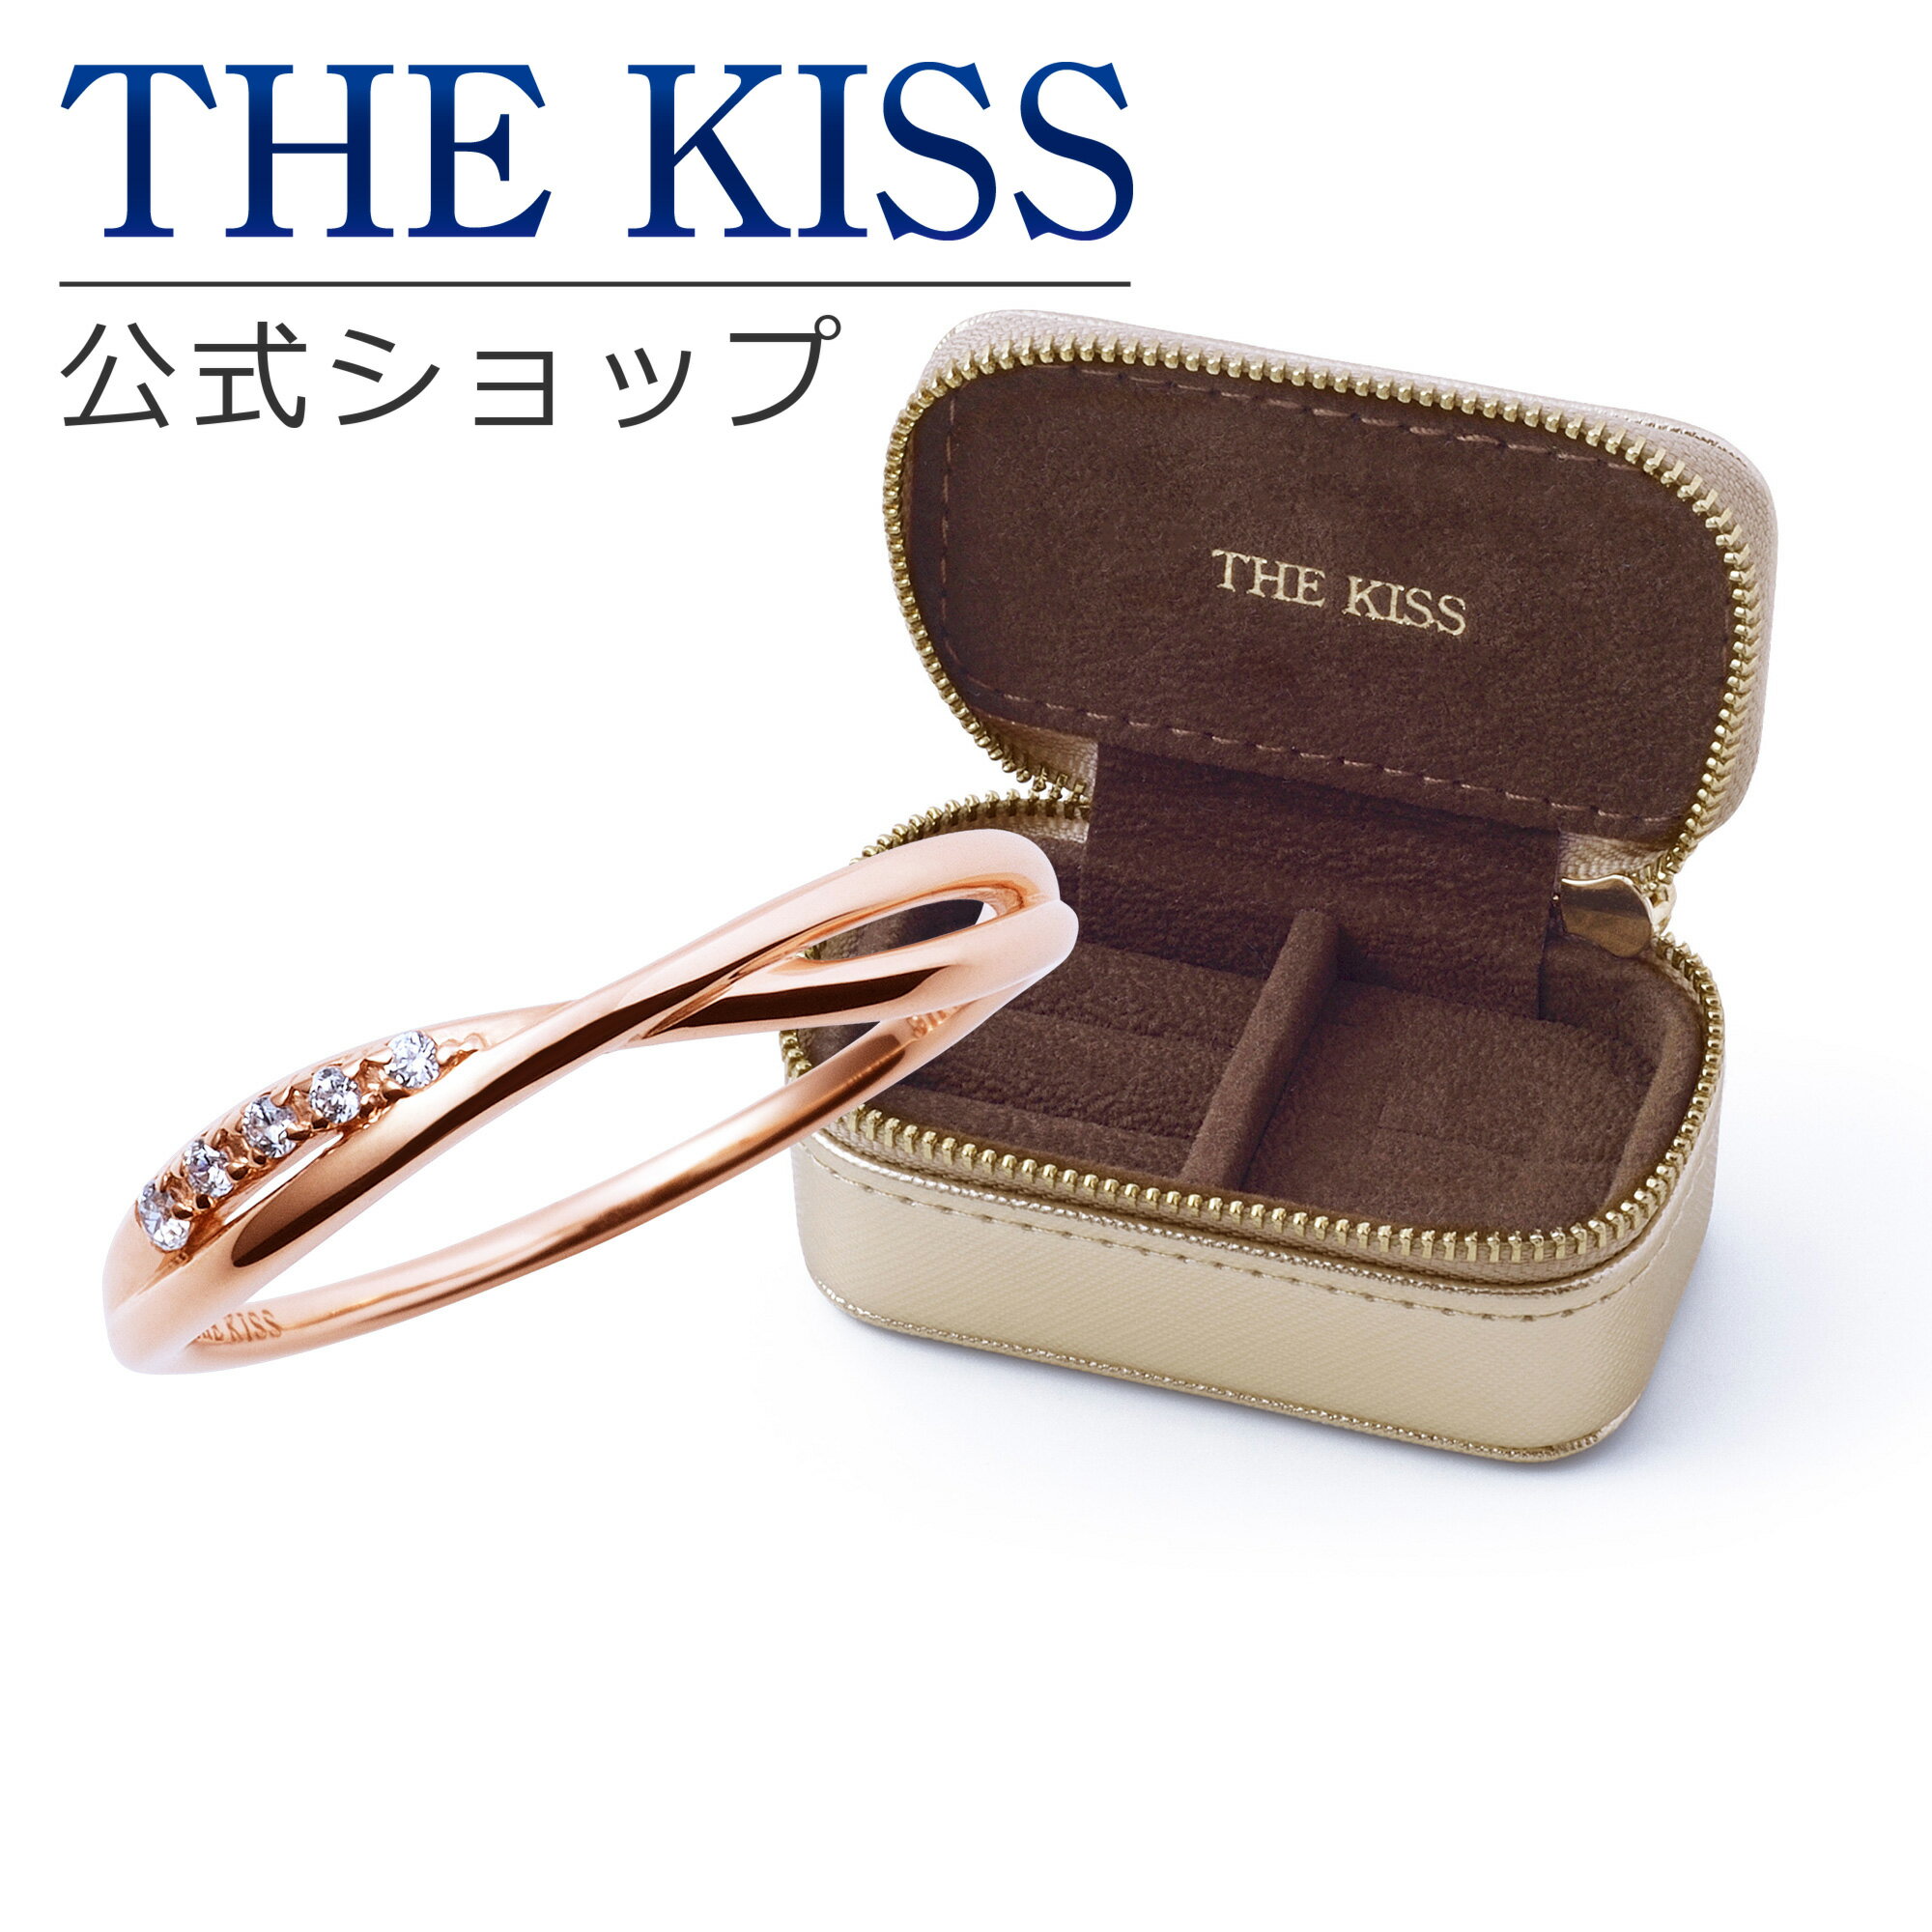 THE KISS 公式ショップ ジュエリーポーチセット シルバー レディース リング ジュエリーポーチ ゴールド 指輪 持ち運び 携帯用 ミニ トラベル アクセサリー用品 ケース ギフト SR2017CB-POUCH-REGULAR01 母の日